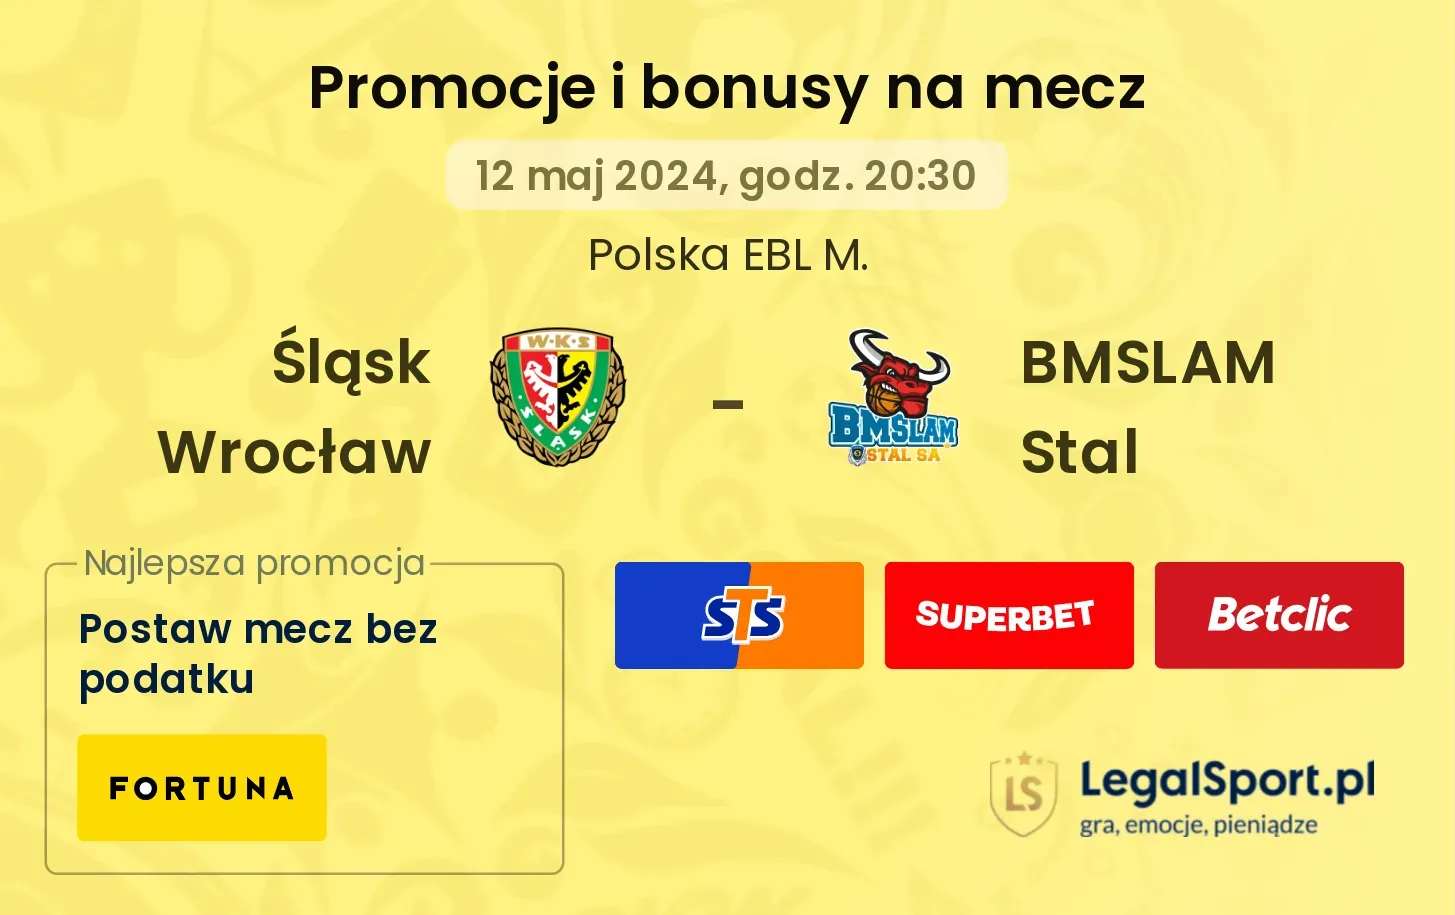 Śląsk Wrocław - BMSLAM Stal bonusy i promocje (12.05, 20:30)